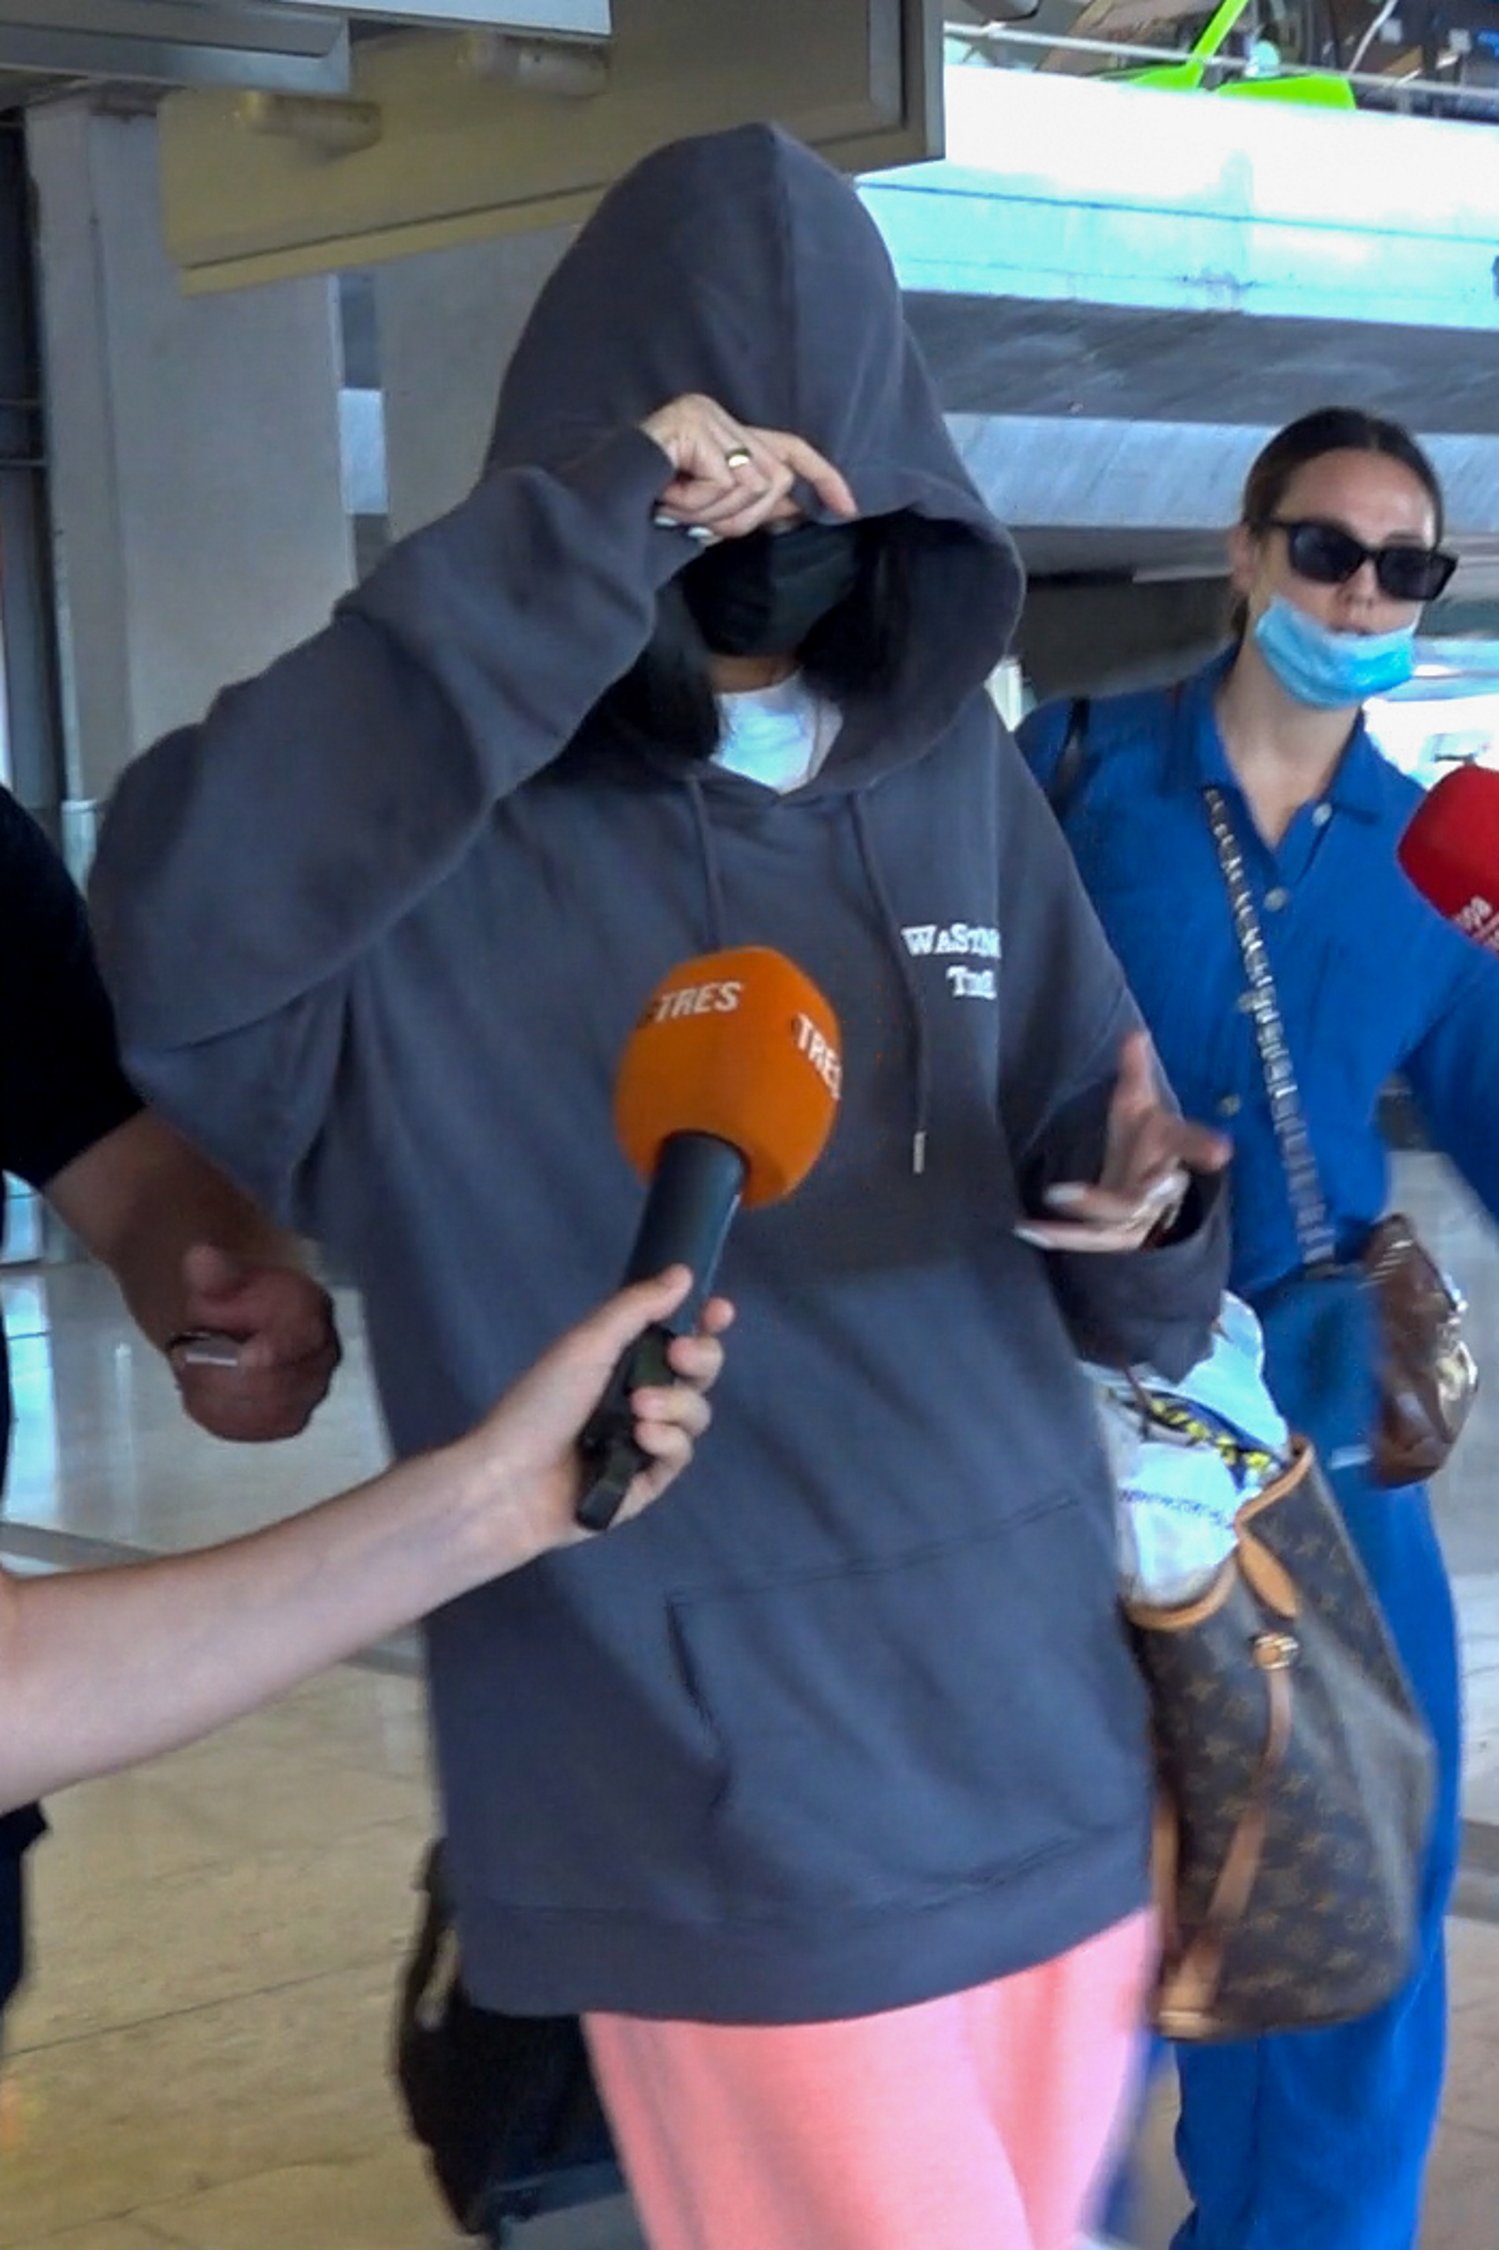 Show de Victoria Federica en el aeropuerto, camuflada y cabreada: "No me hables"